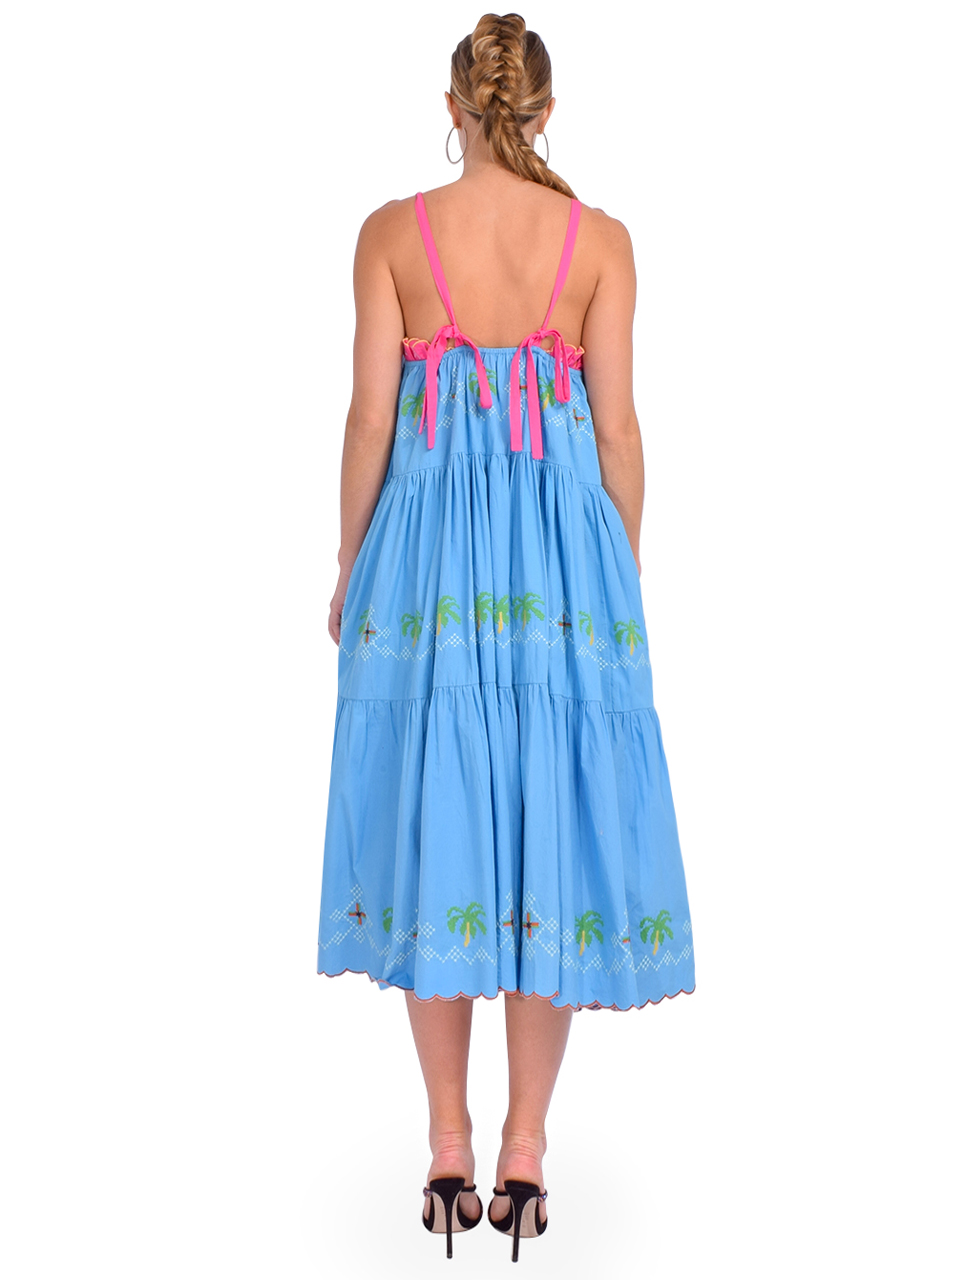 RUE DE LA LUNE Hortensia Embroidered Dress in Blue Back View 

